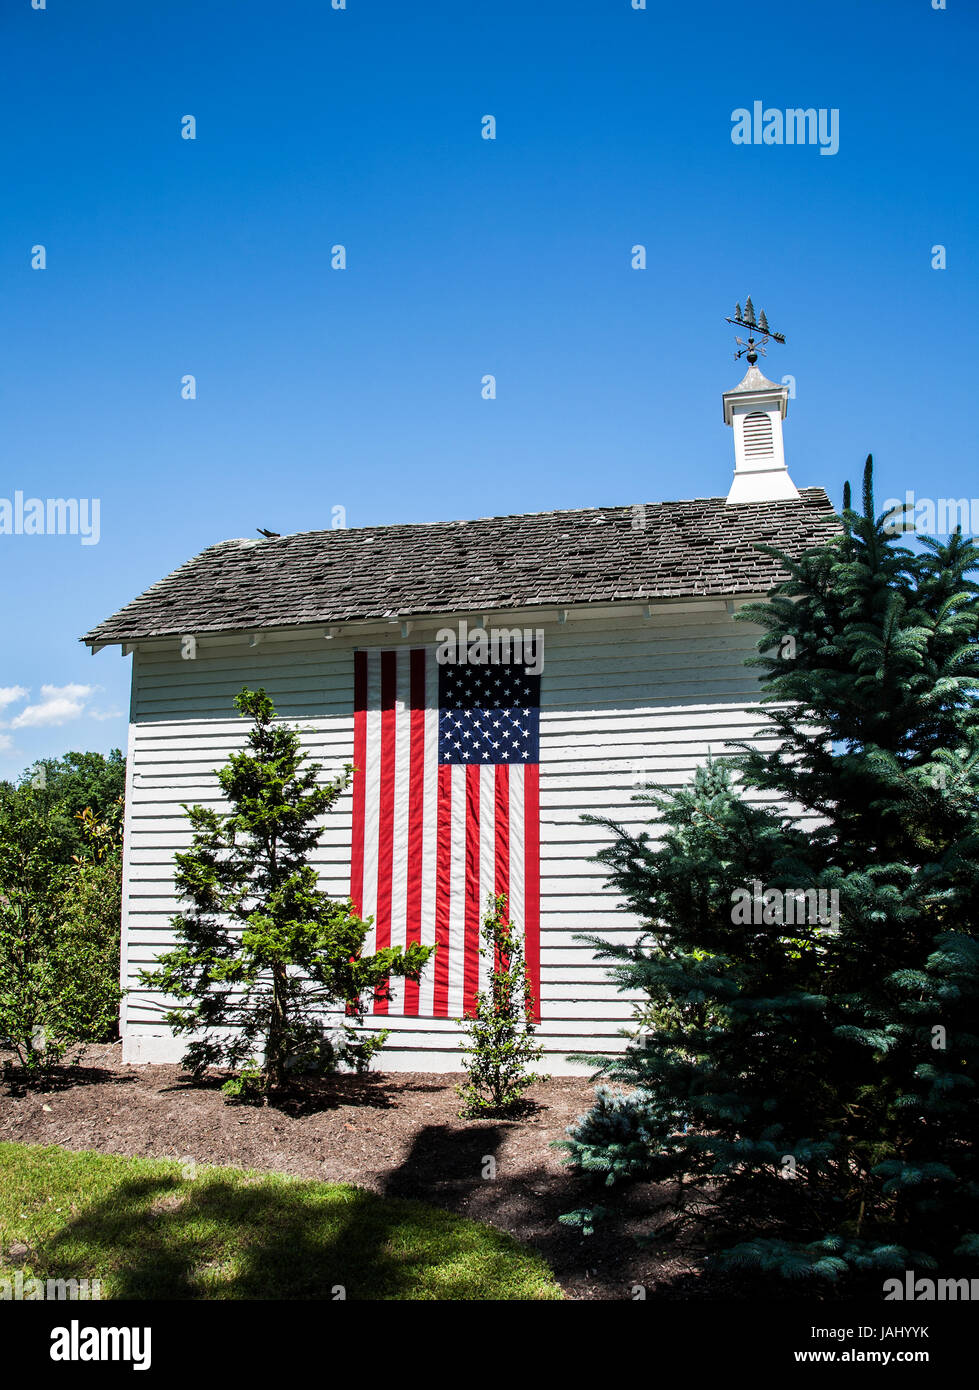 Drapeau américain sur une ancienne grange blanche restaurée avec une coupole ajoutée sur une ferme dans le comté de Cape May, New Jersey, Etats-Unis, Amérique rurale 2017 hangar de stockage pt Banque D'Images